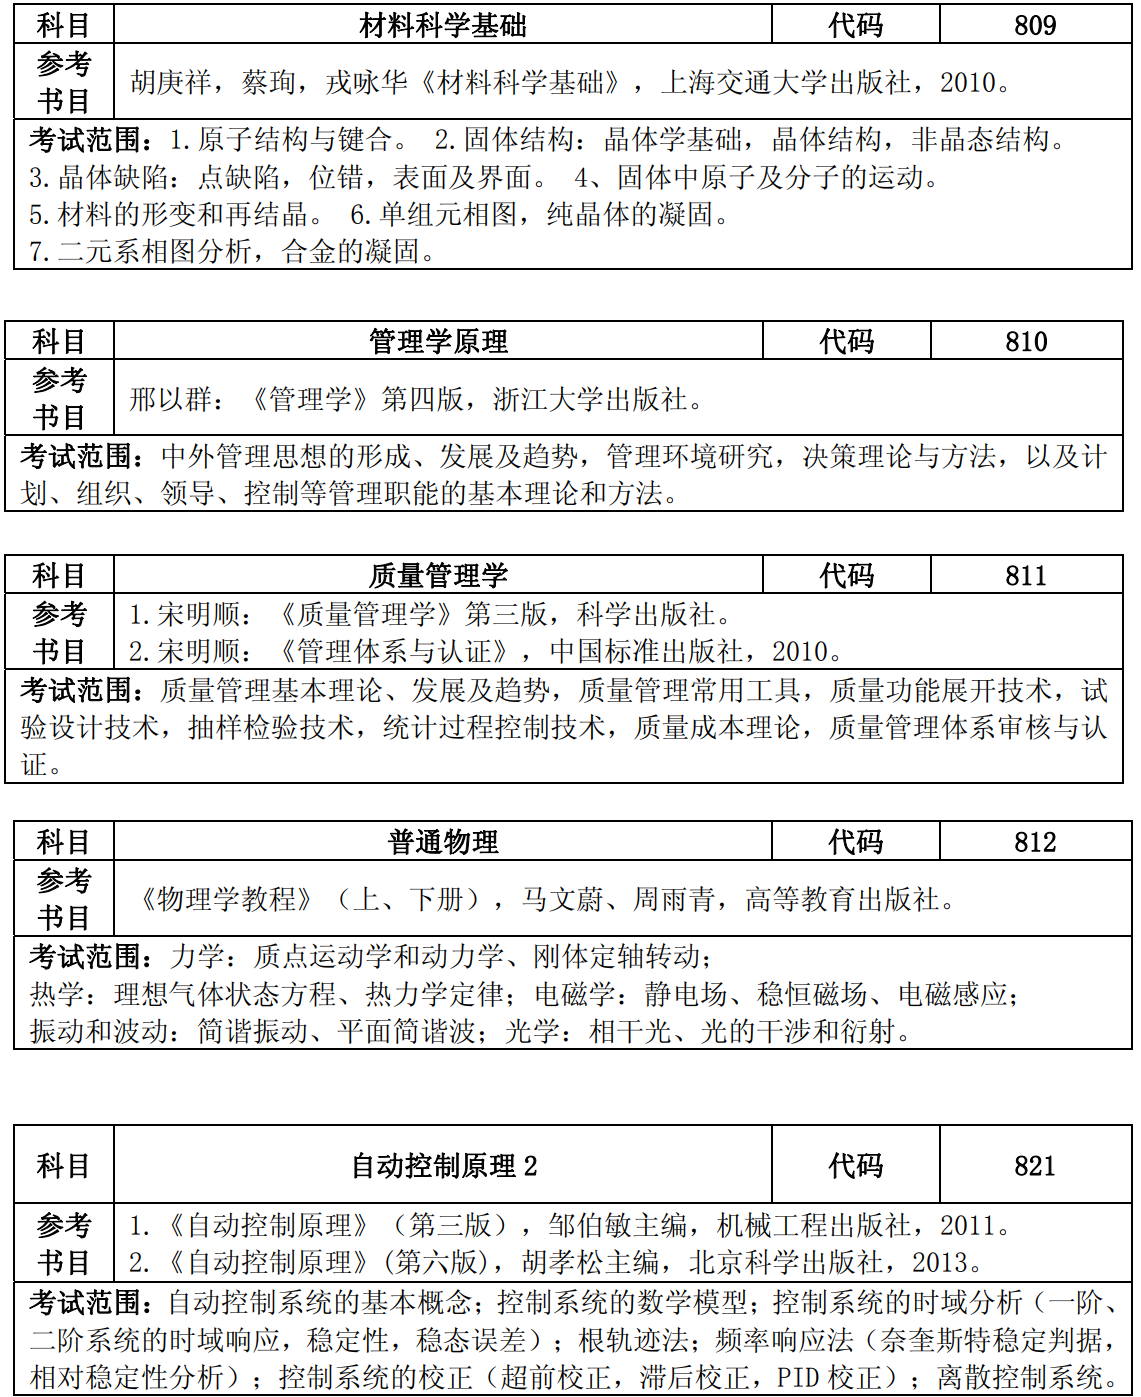 中国计量大学2020年硕士研究生招生初试参考书目